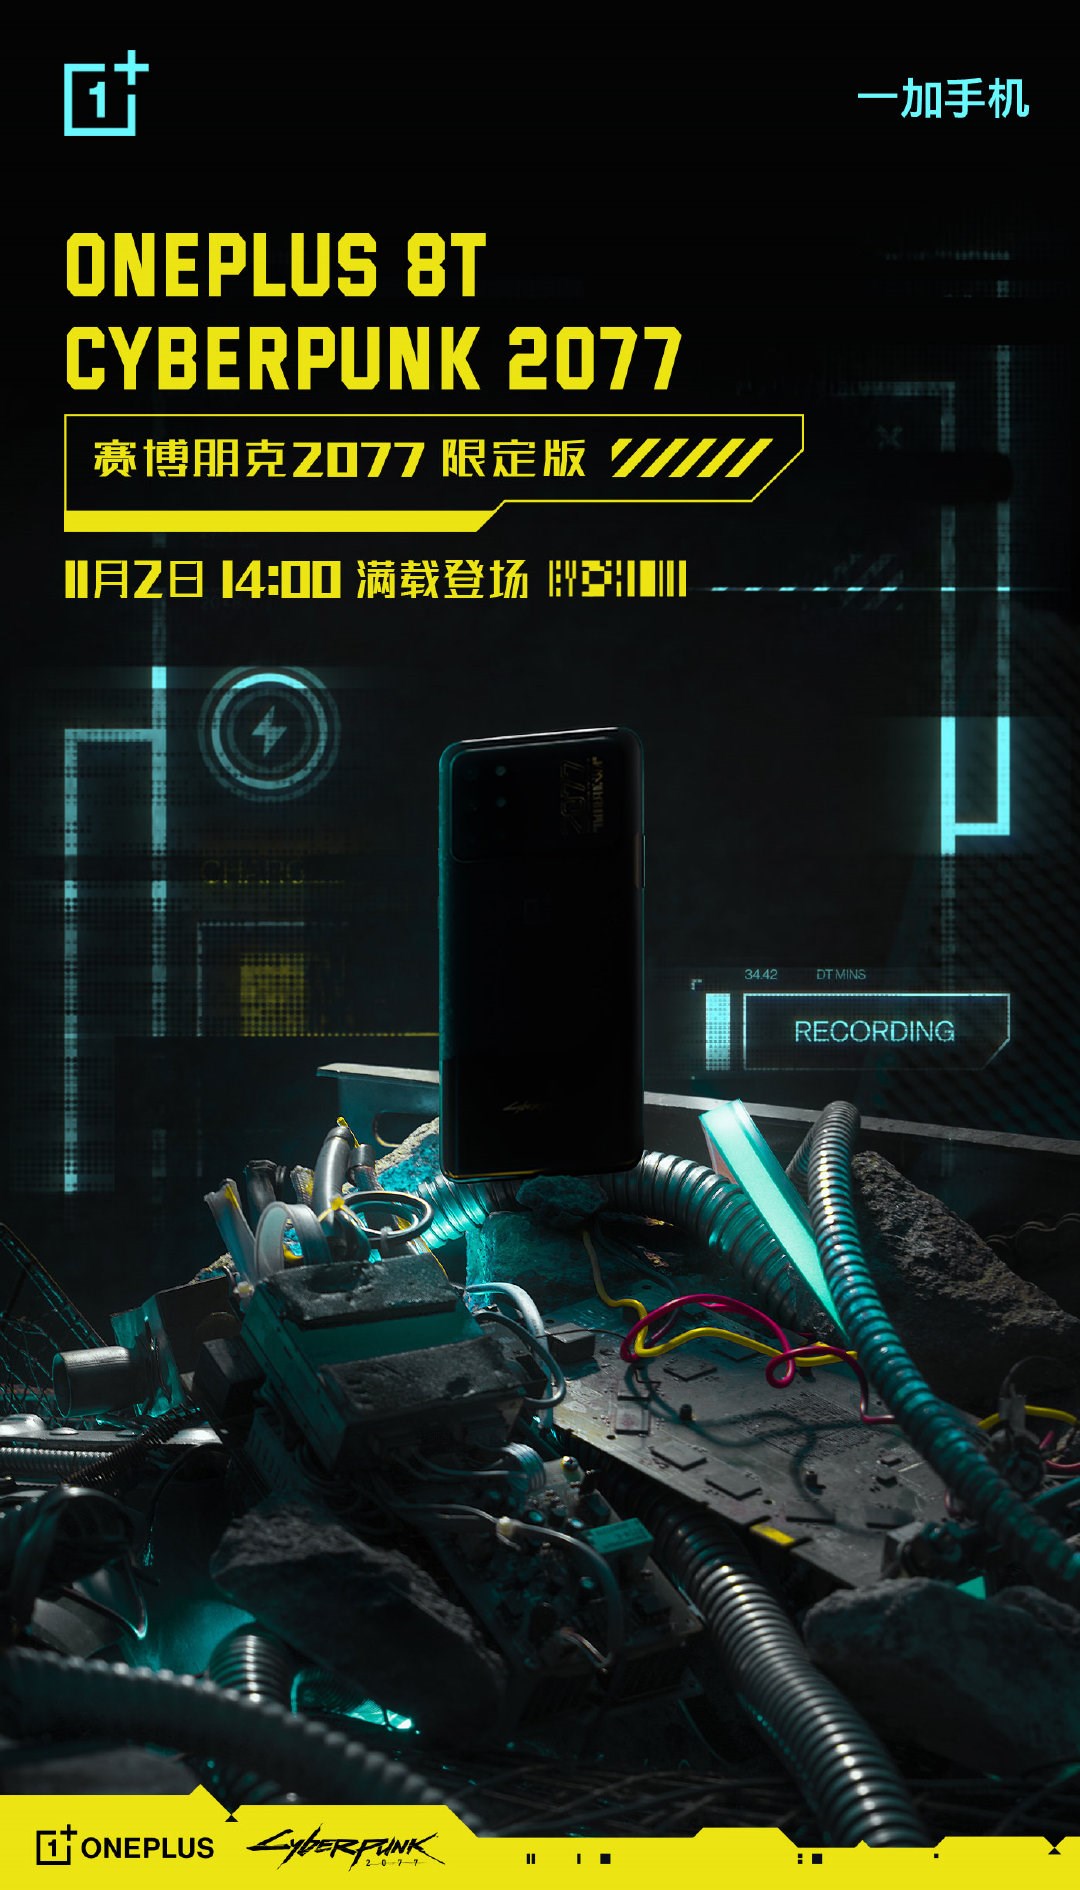 OnePlus 8T'nin Cyberpunk 2077'ye özel sürümü geliyor: Oyundan önce telefon gelecek